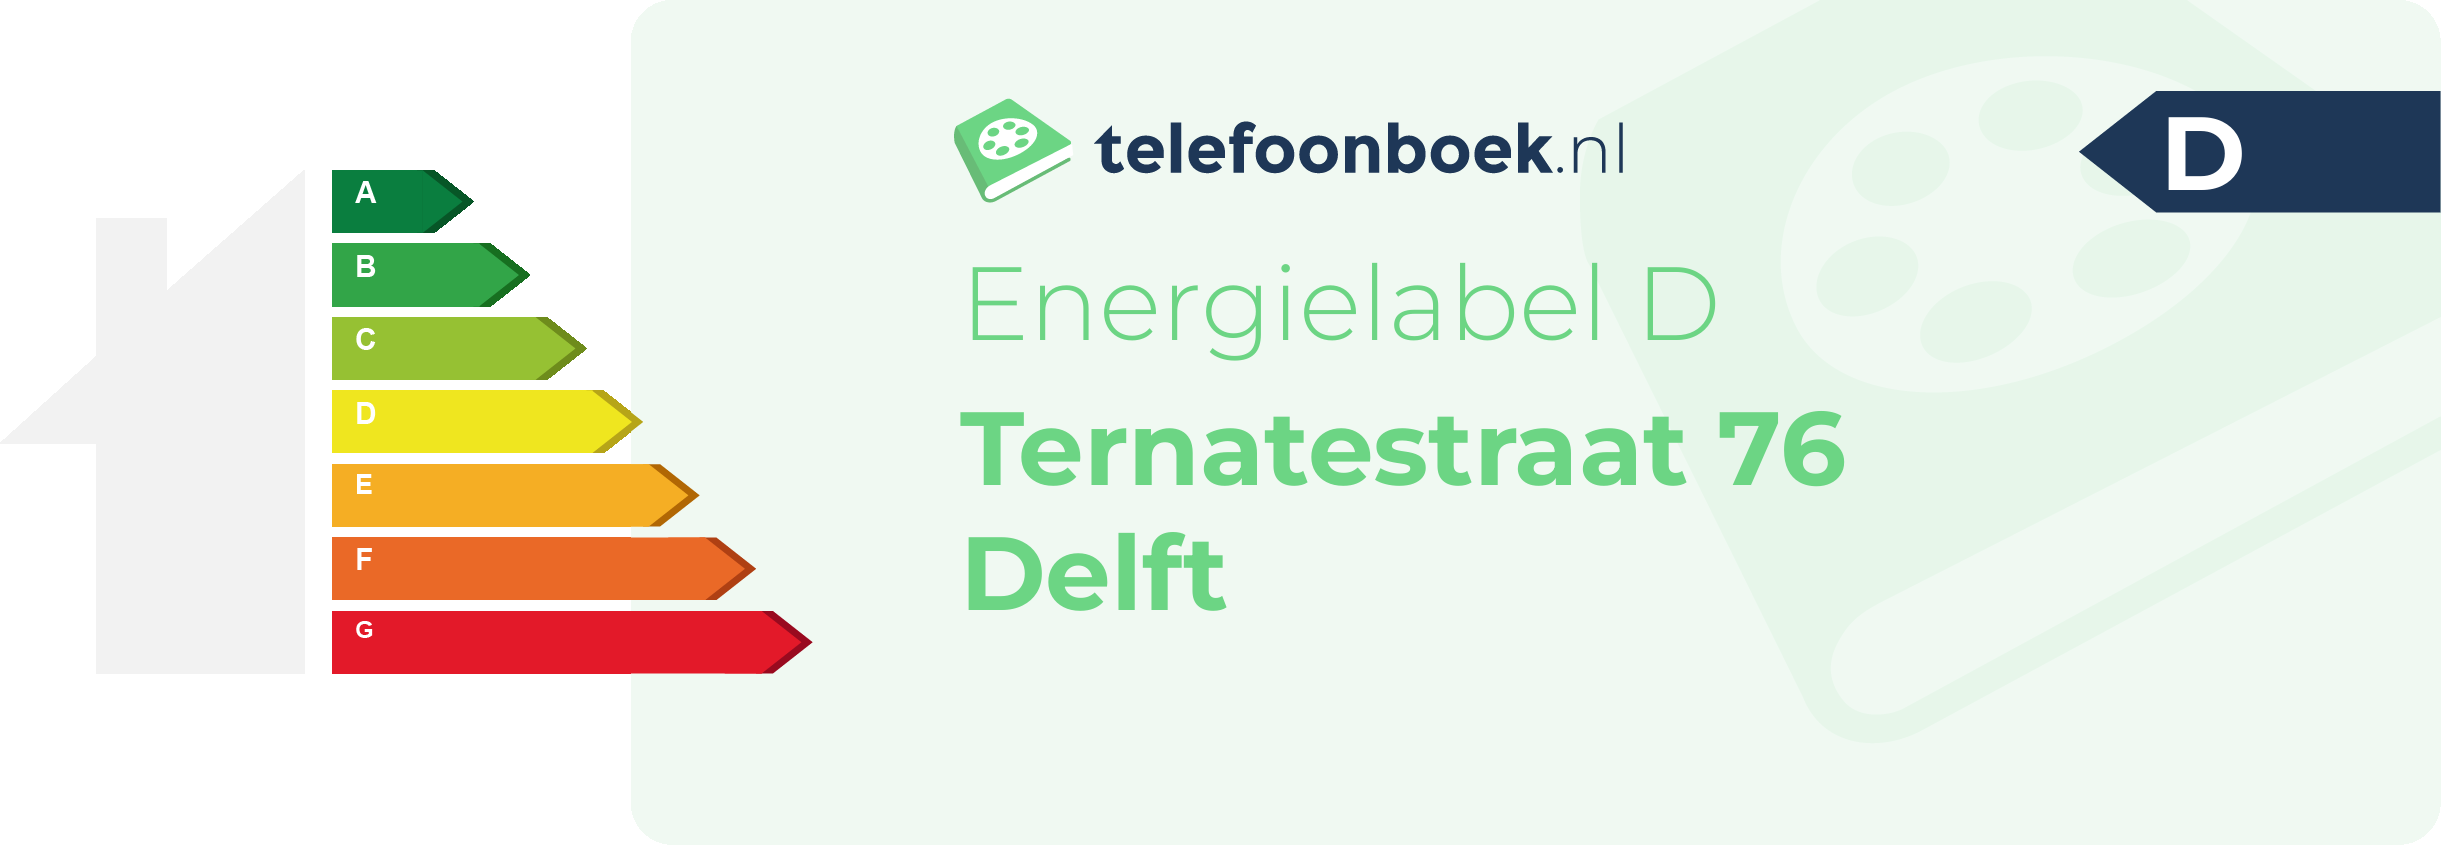 Energielabel Ternatestraat 76 Delft